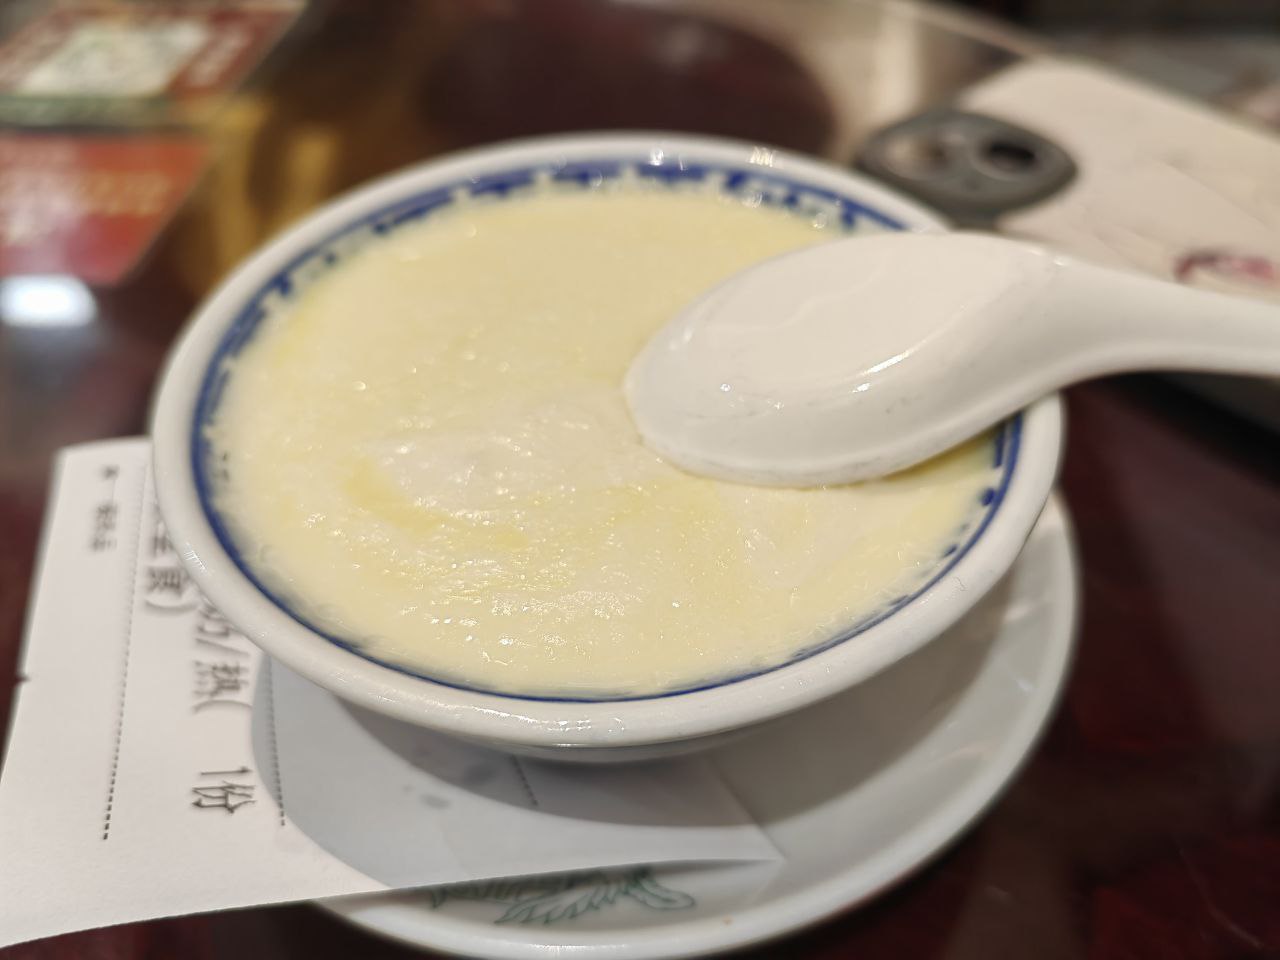 牛奶脂肪含量低就不容易做双皮奶，可能这就是虽然工艺简单但北京的味道就是不够好的原因